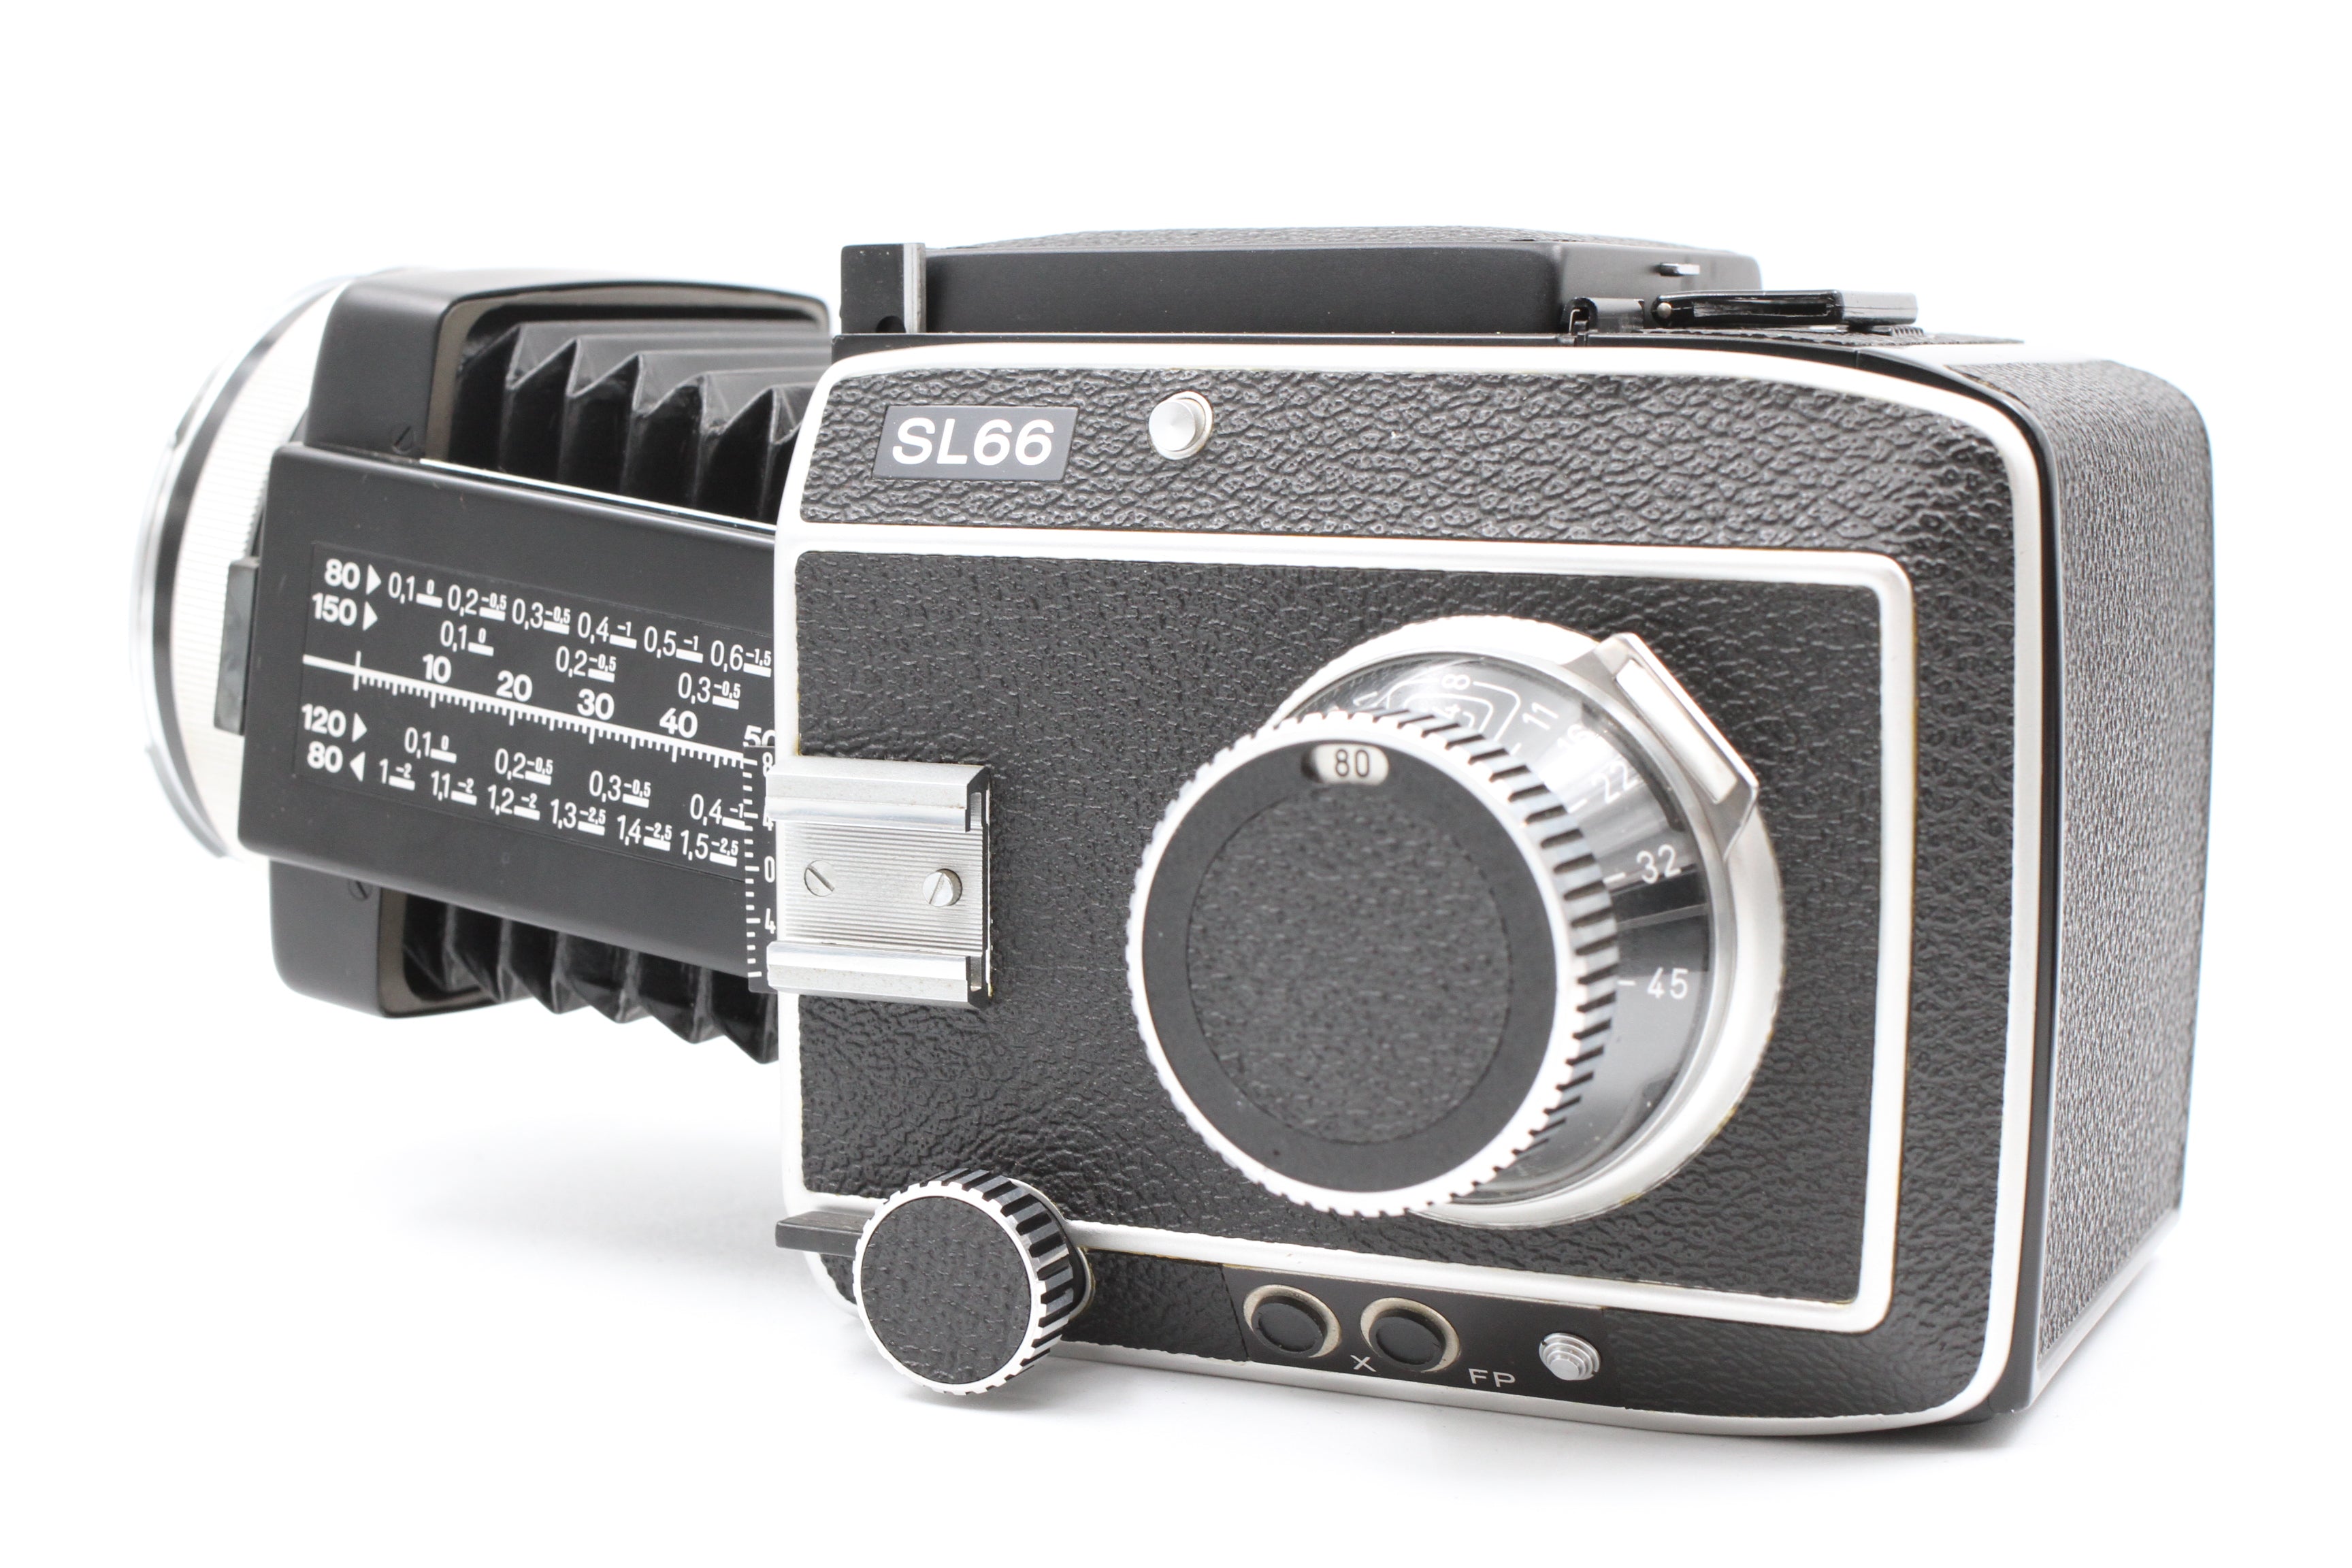 Rolleiflex SL66 6x6 Medium Format Camera w/ 80mm f2.8 Planar & Case